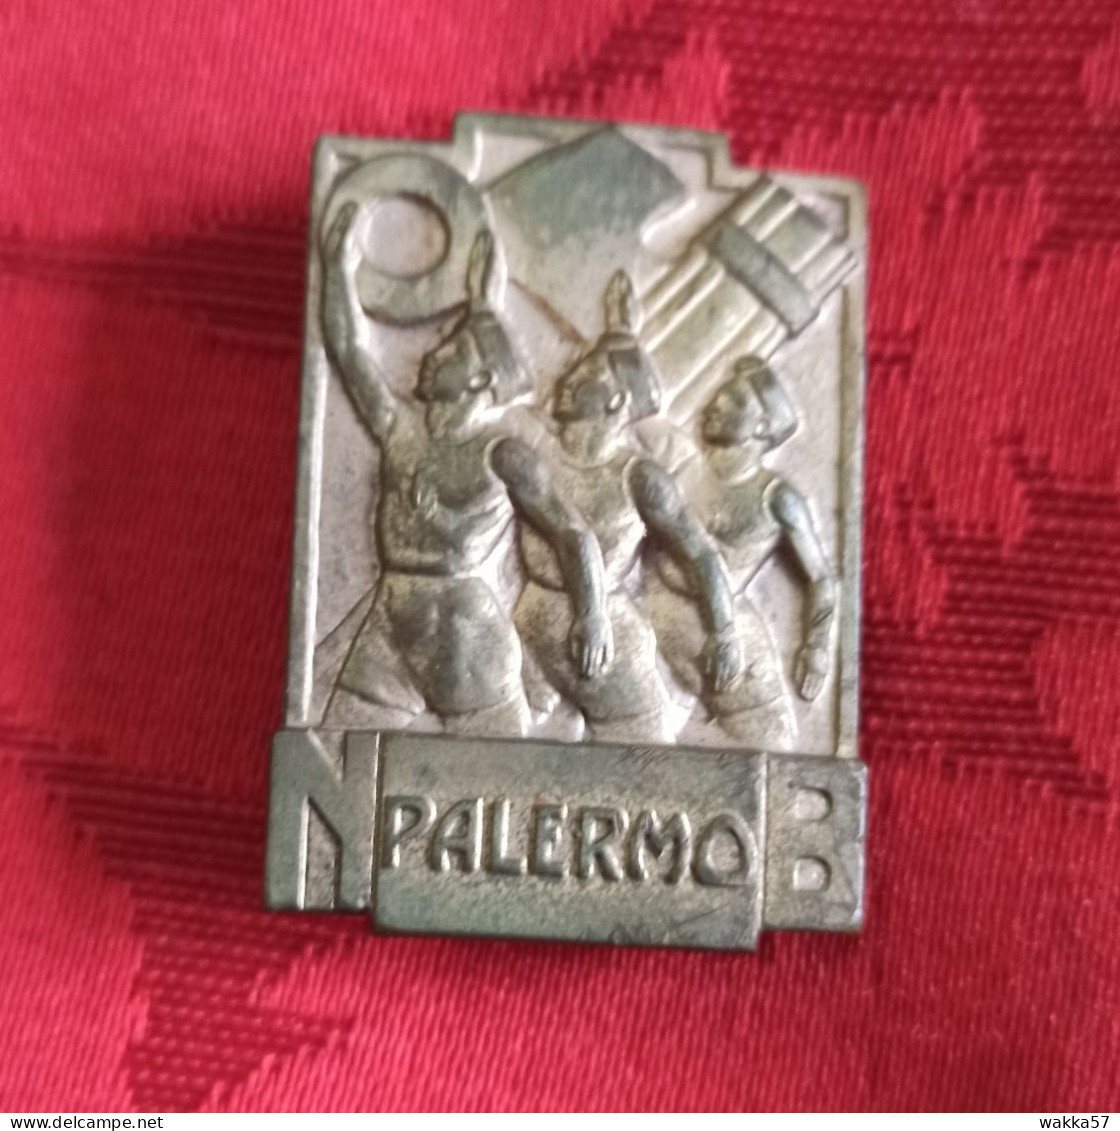 Distintivo Spilla ONB Palermo - Opera Nazionale Balilla - Mortillaro - Militaria